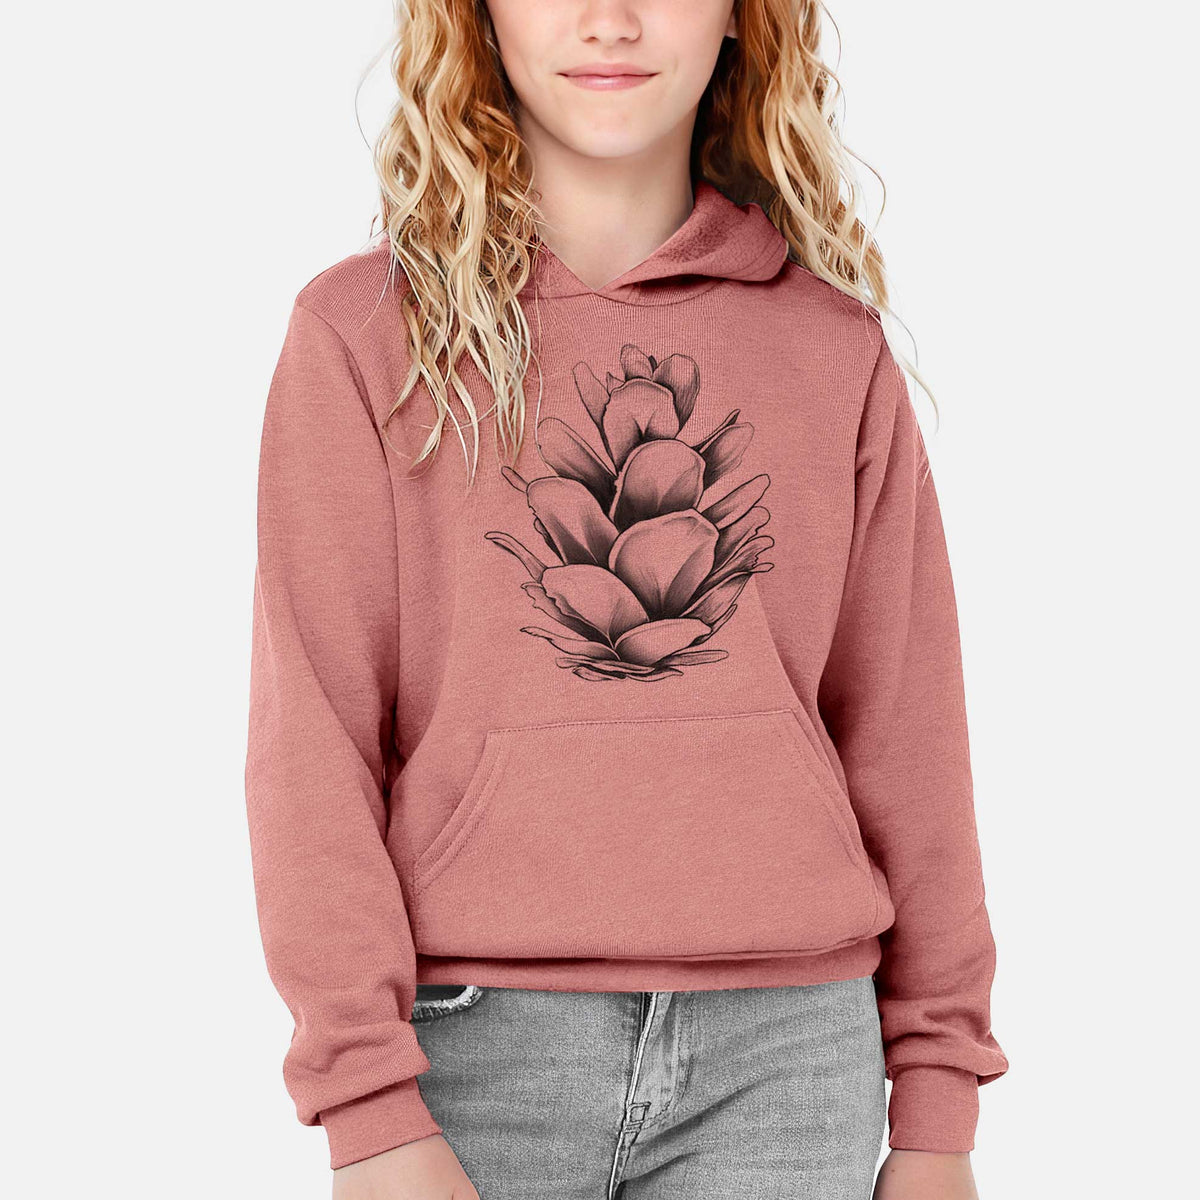 Tsuga heterophylla - Western Hemlock Pine Cone - Youth Hoodie Sweatshirt